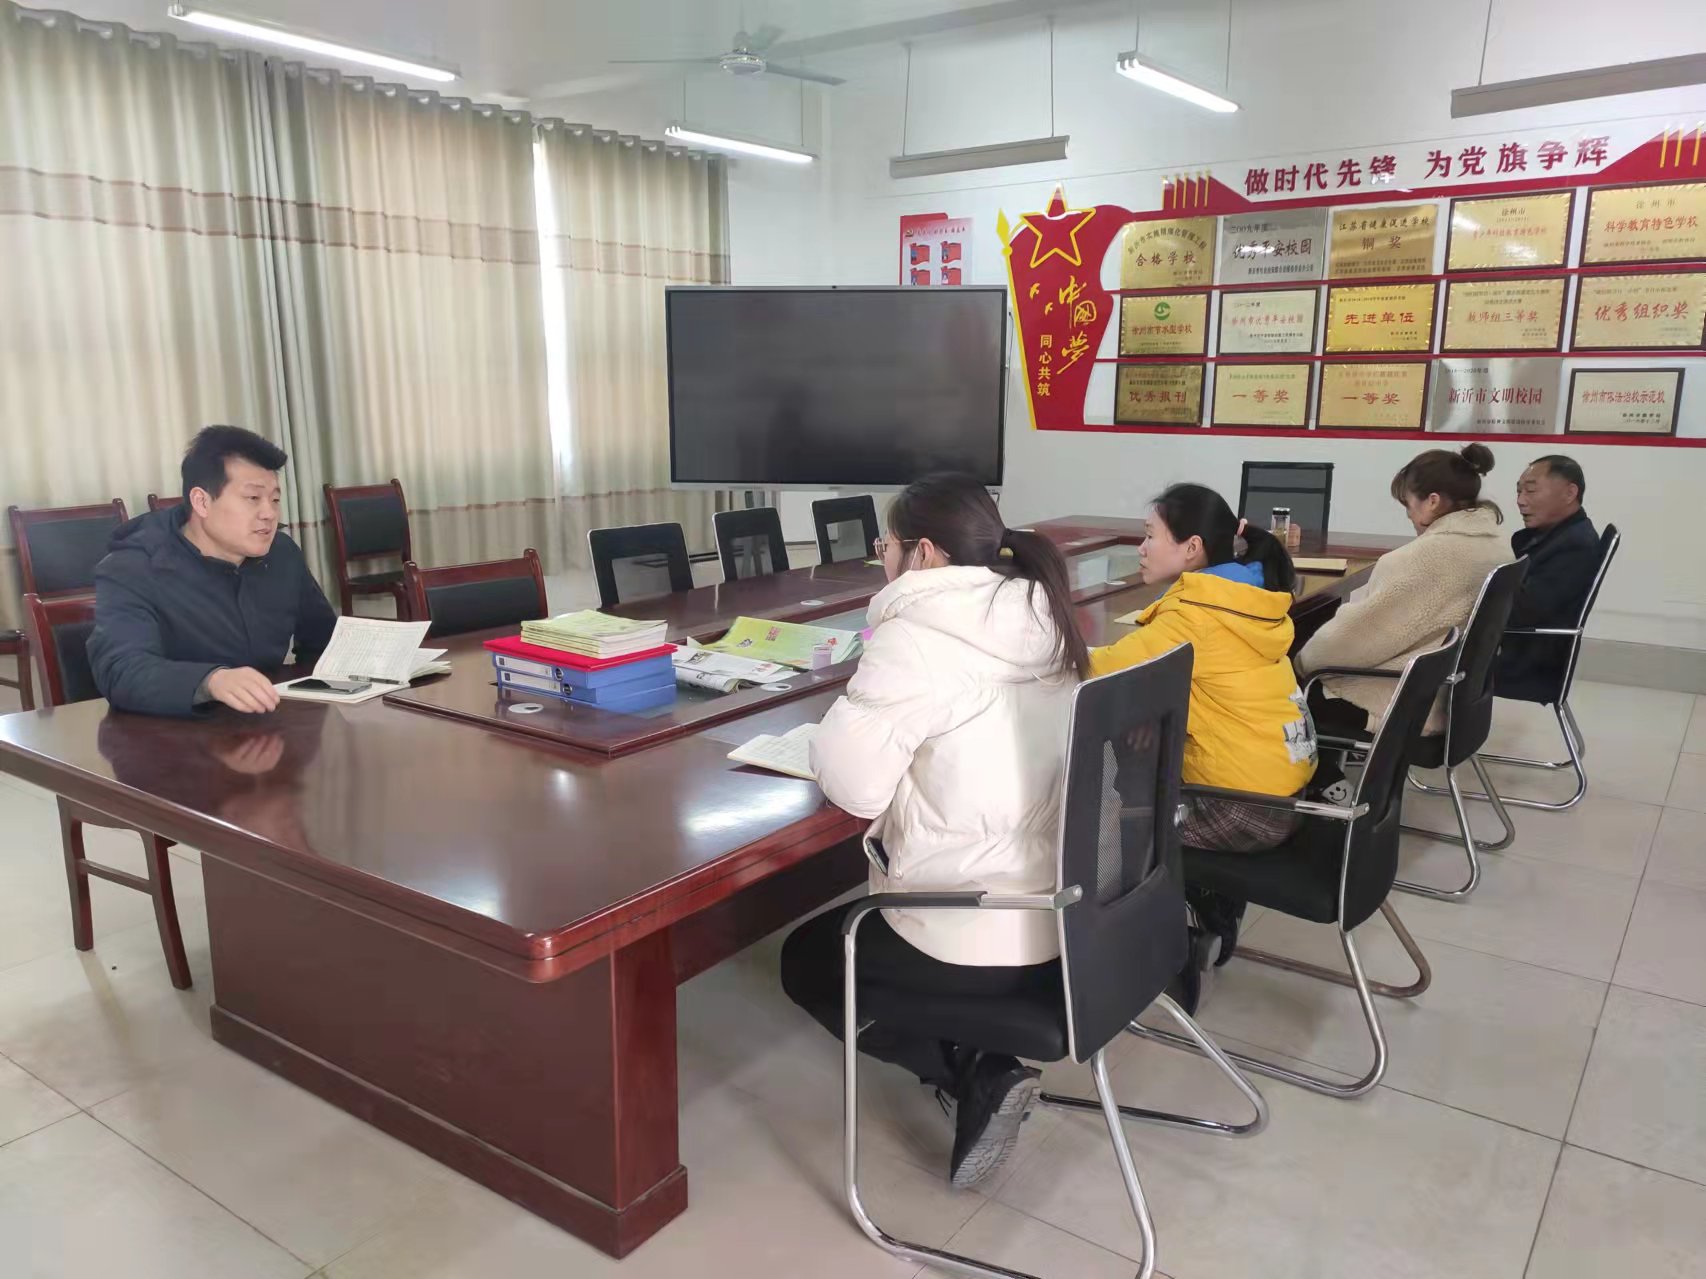 悉心指导   促进成长 ——瓦窑镇小学研训员深入课堂指导教学